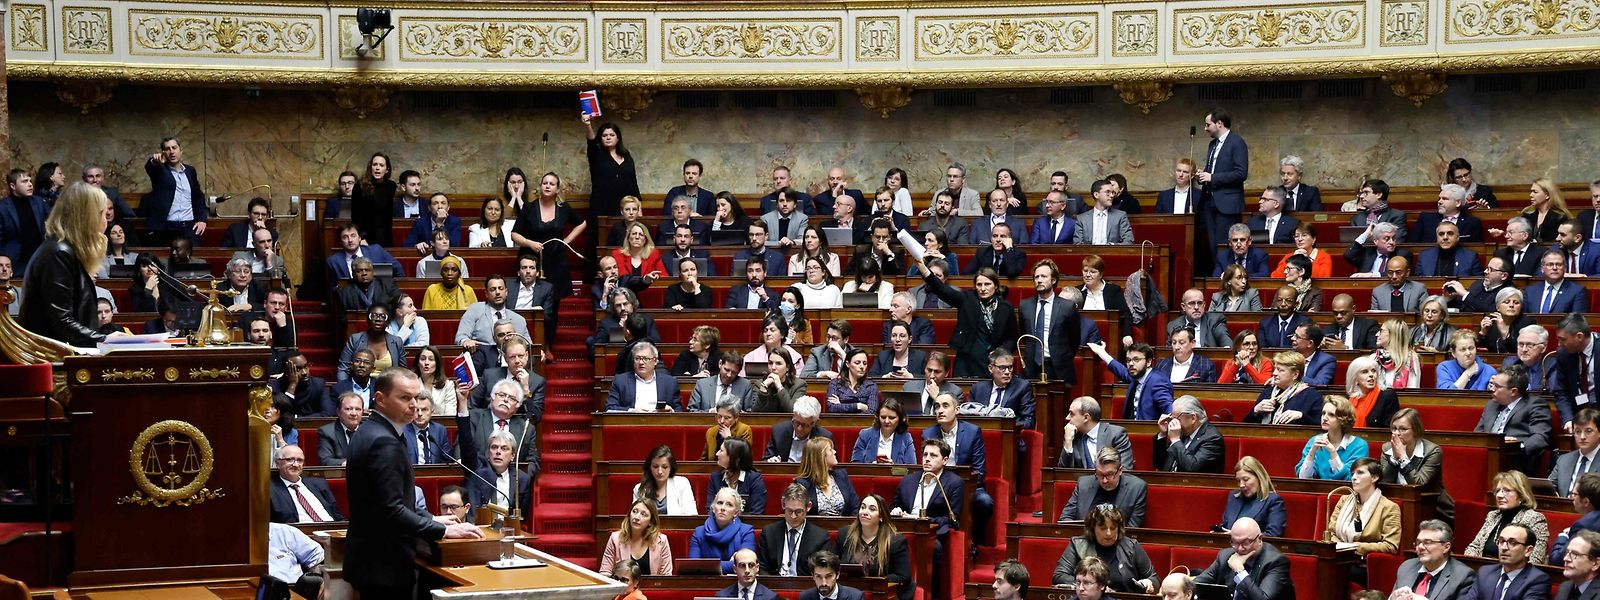 Alors que le débat sur la réforme des retraites a démarré dans une ambiance électrique à l'Assemblée nationale lundi, ce mardi 7 février marque la troisième journée de mobilisation dans la rue, partout en France.